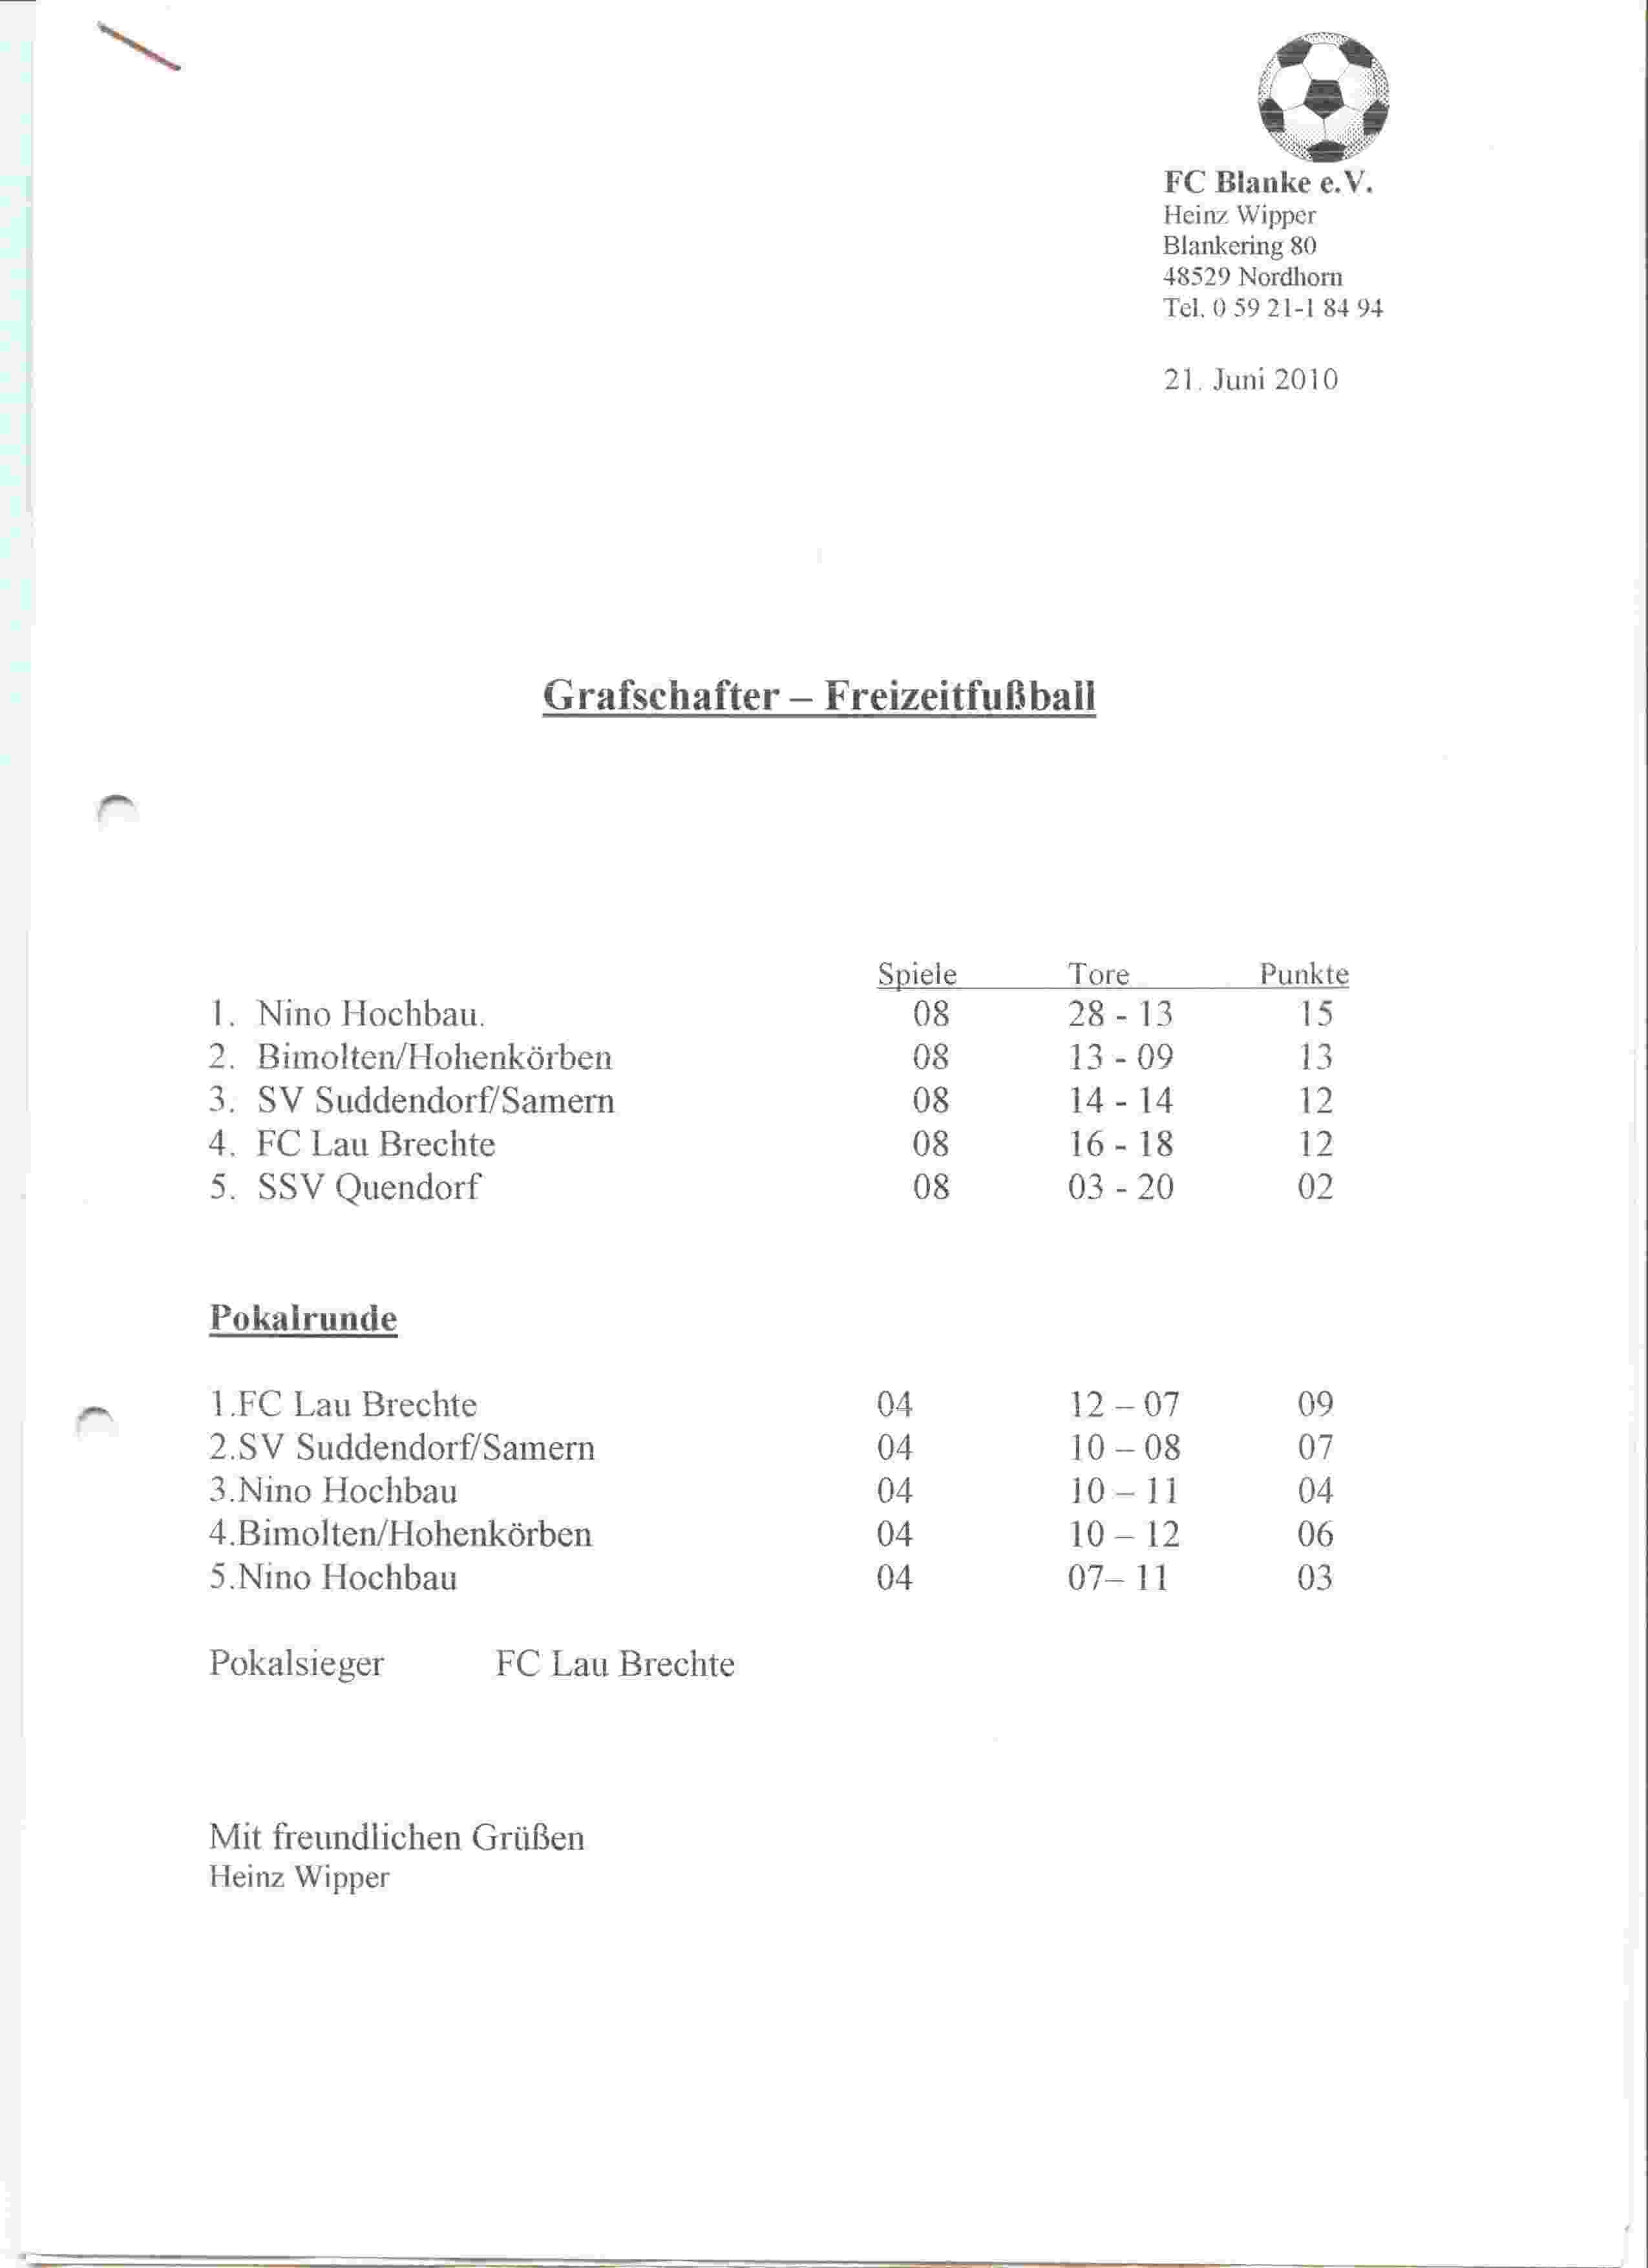 Eindstand Grafschafter Freizeit Fuβball Runde seizoen 2009/2010